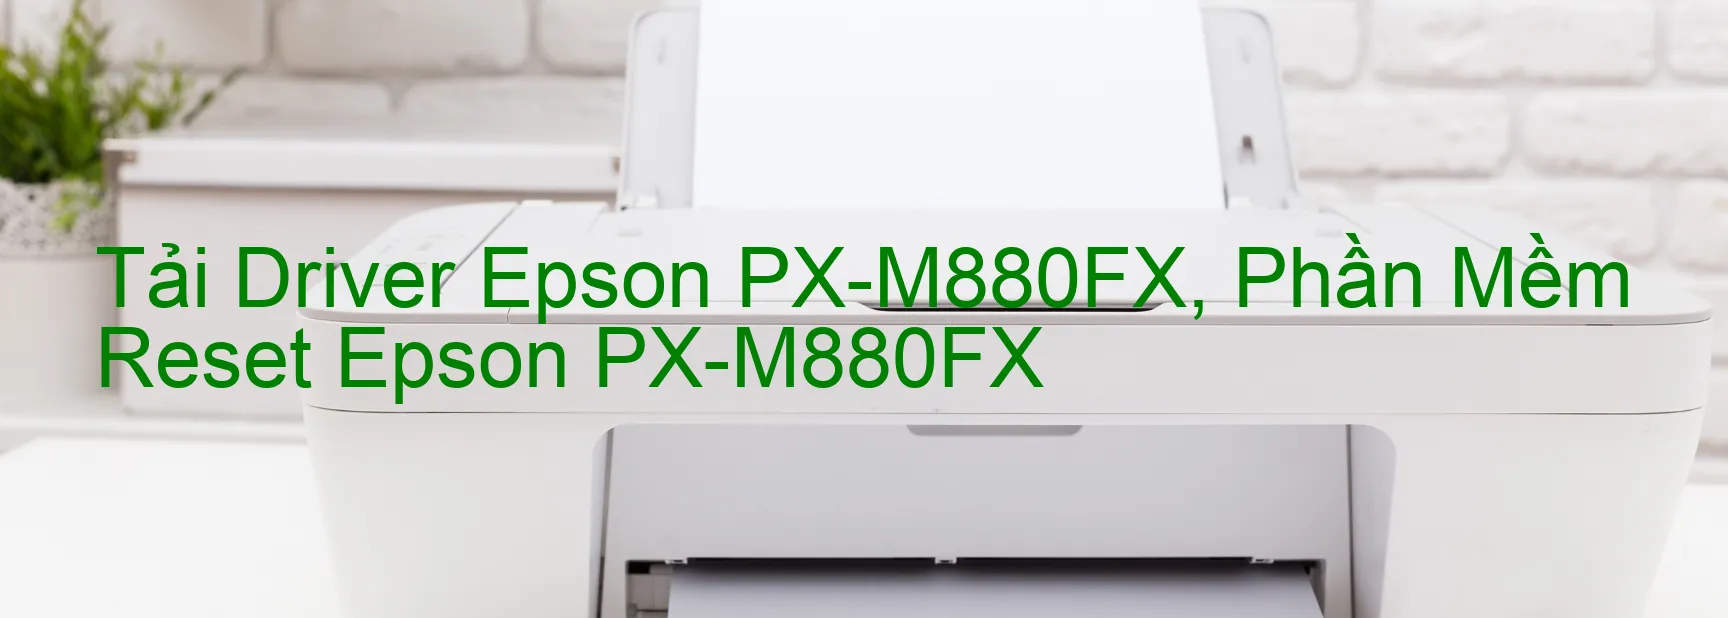 Driver Epson PX-M880FX, Phần Mềm Reset Epson PX-M880FX